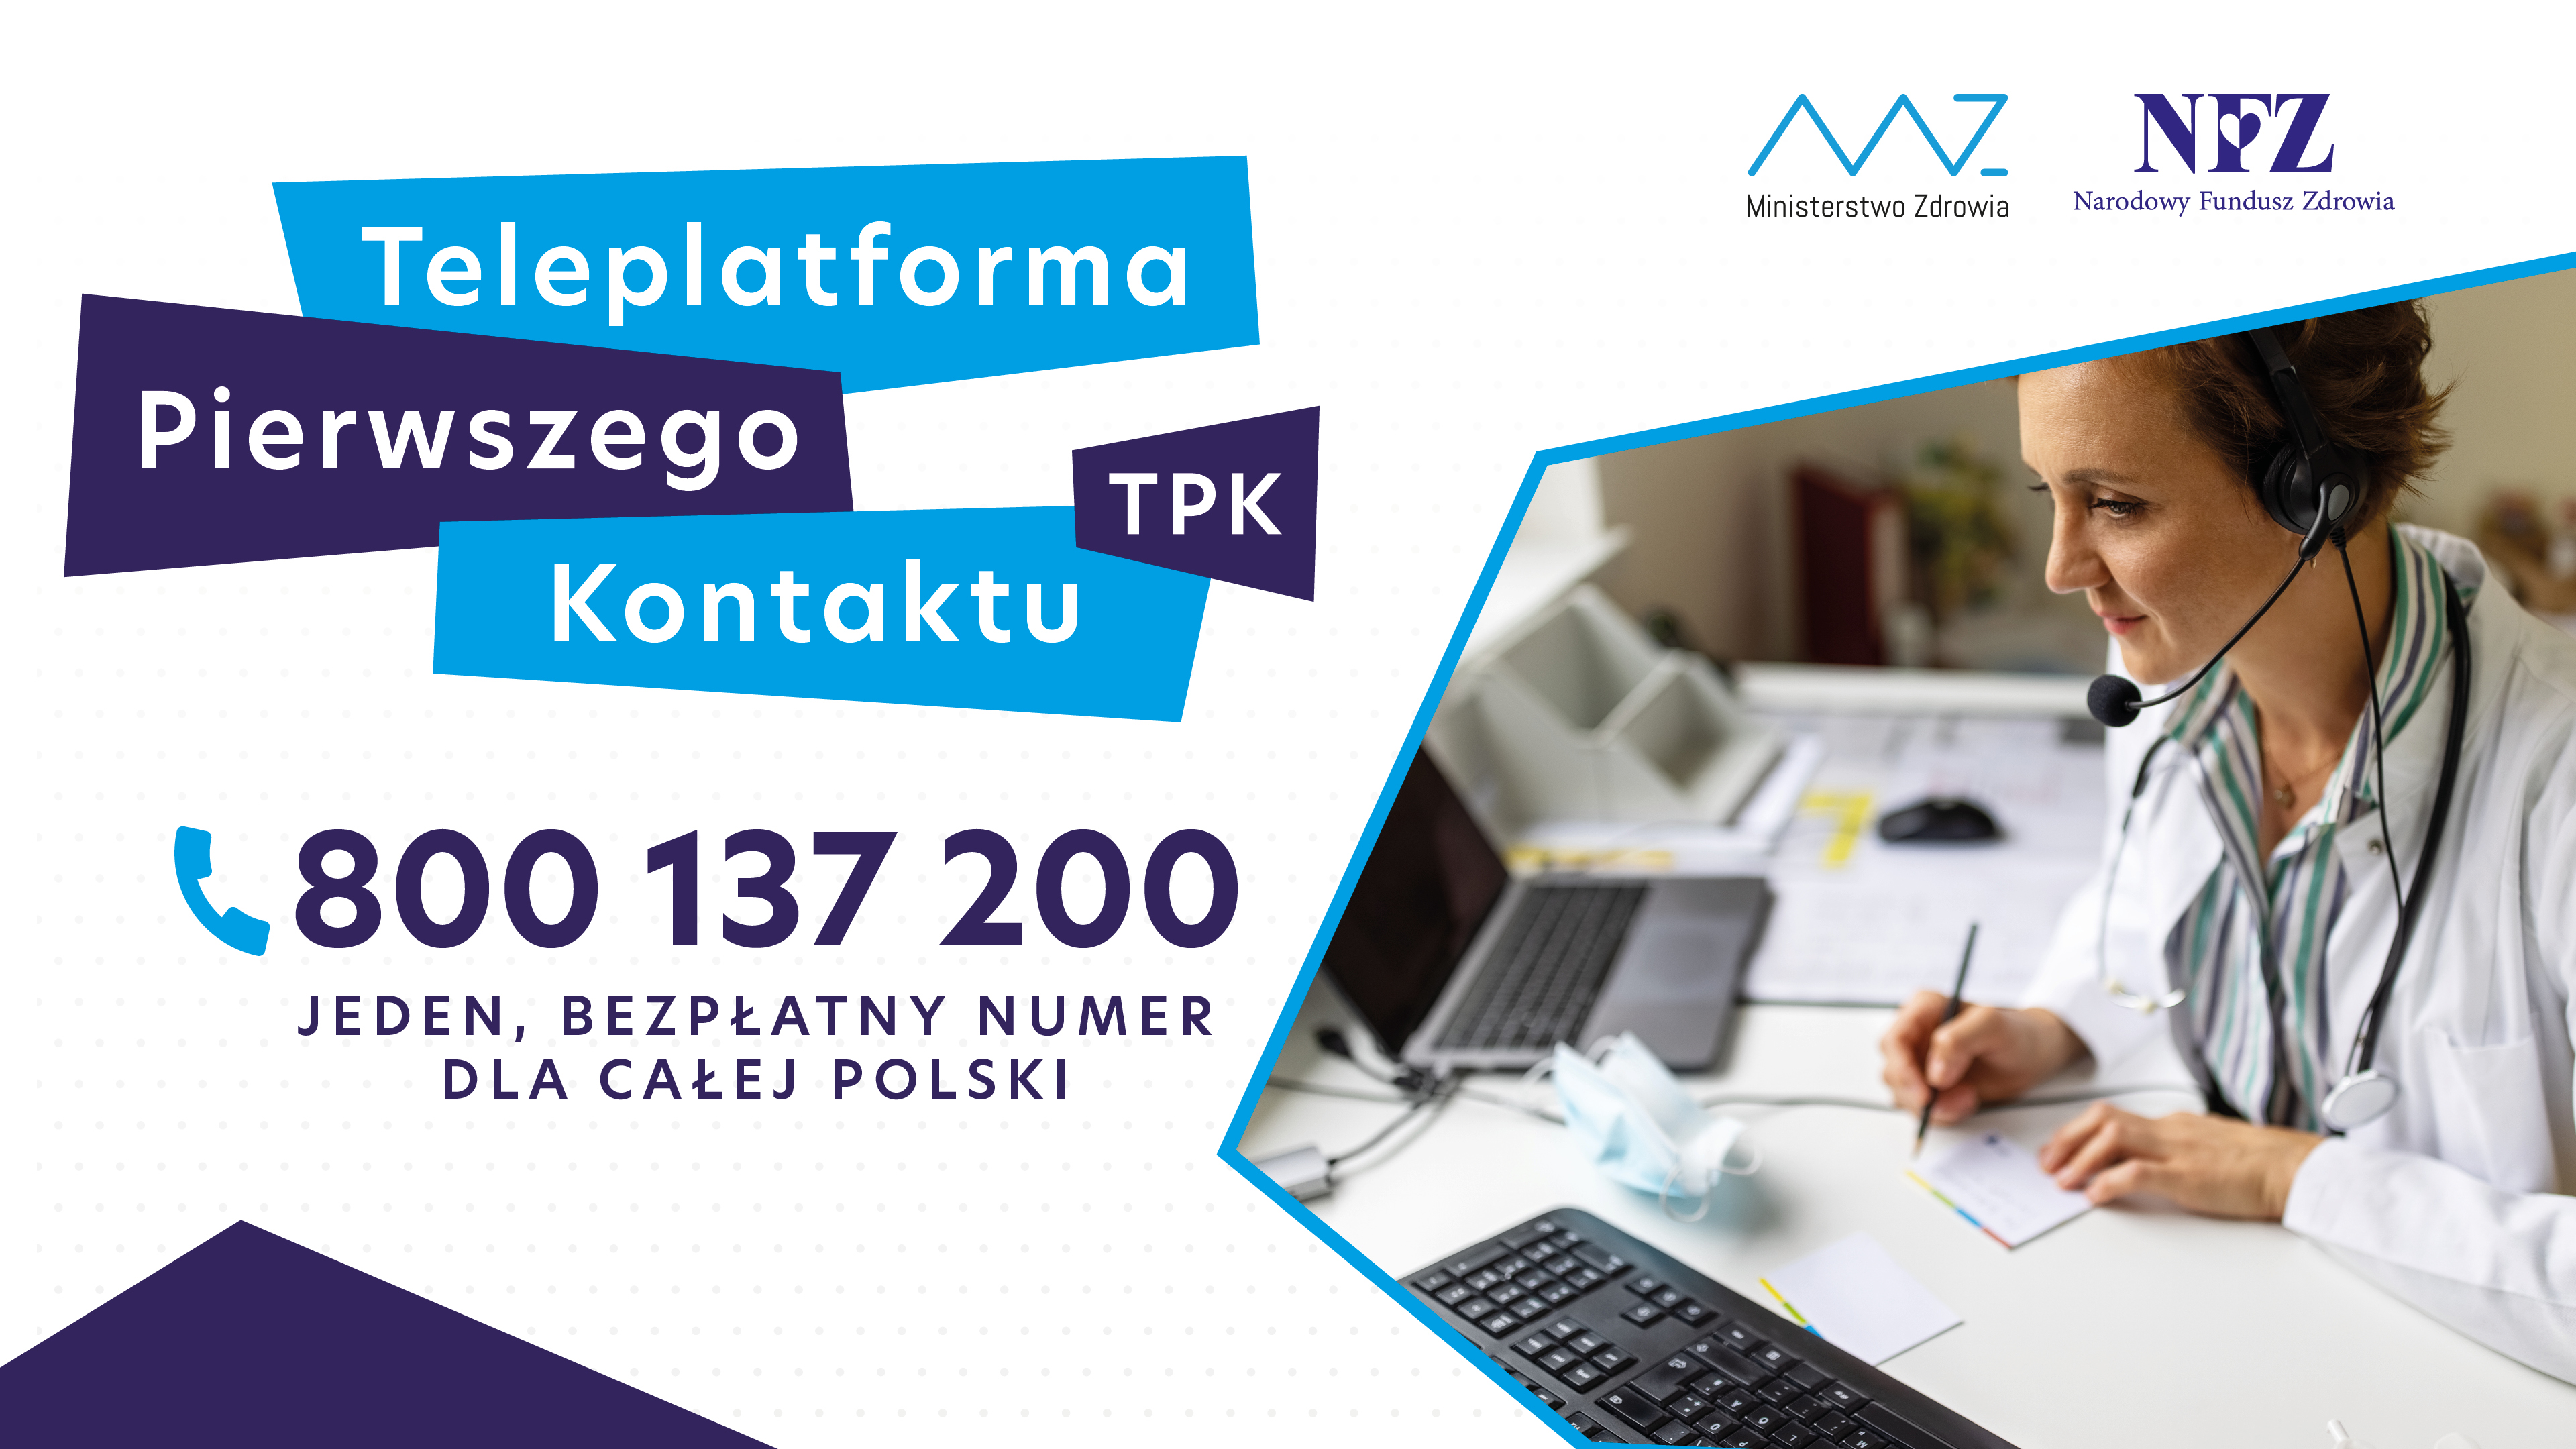 Plakat: TPK - 800 137 200 – jeden numer w całej Polsce  Pomoc medyczna nocą i w święta